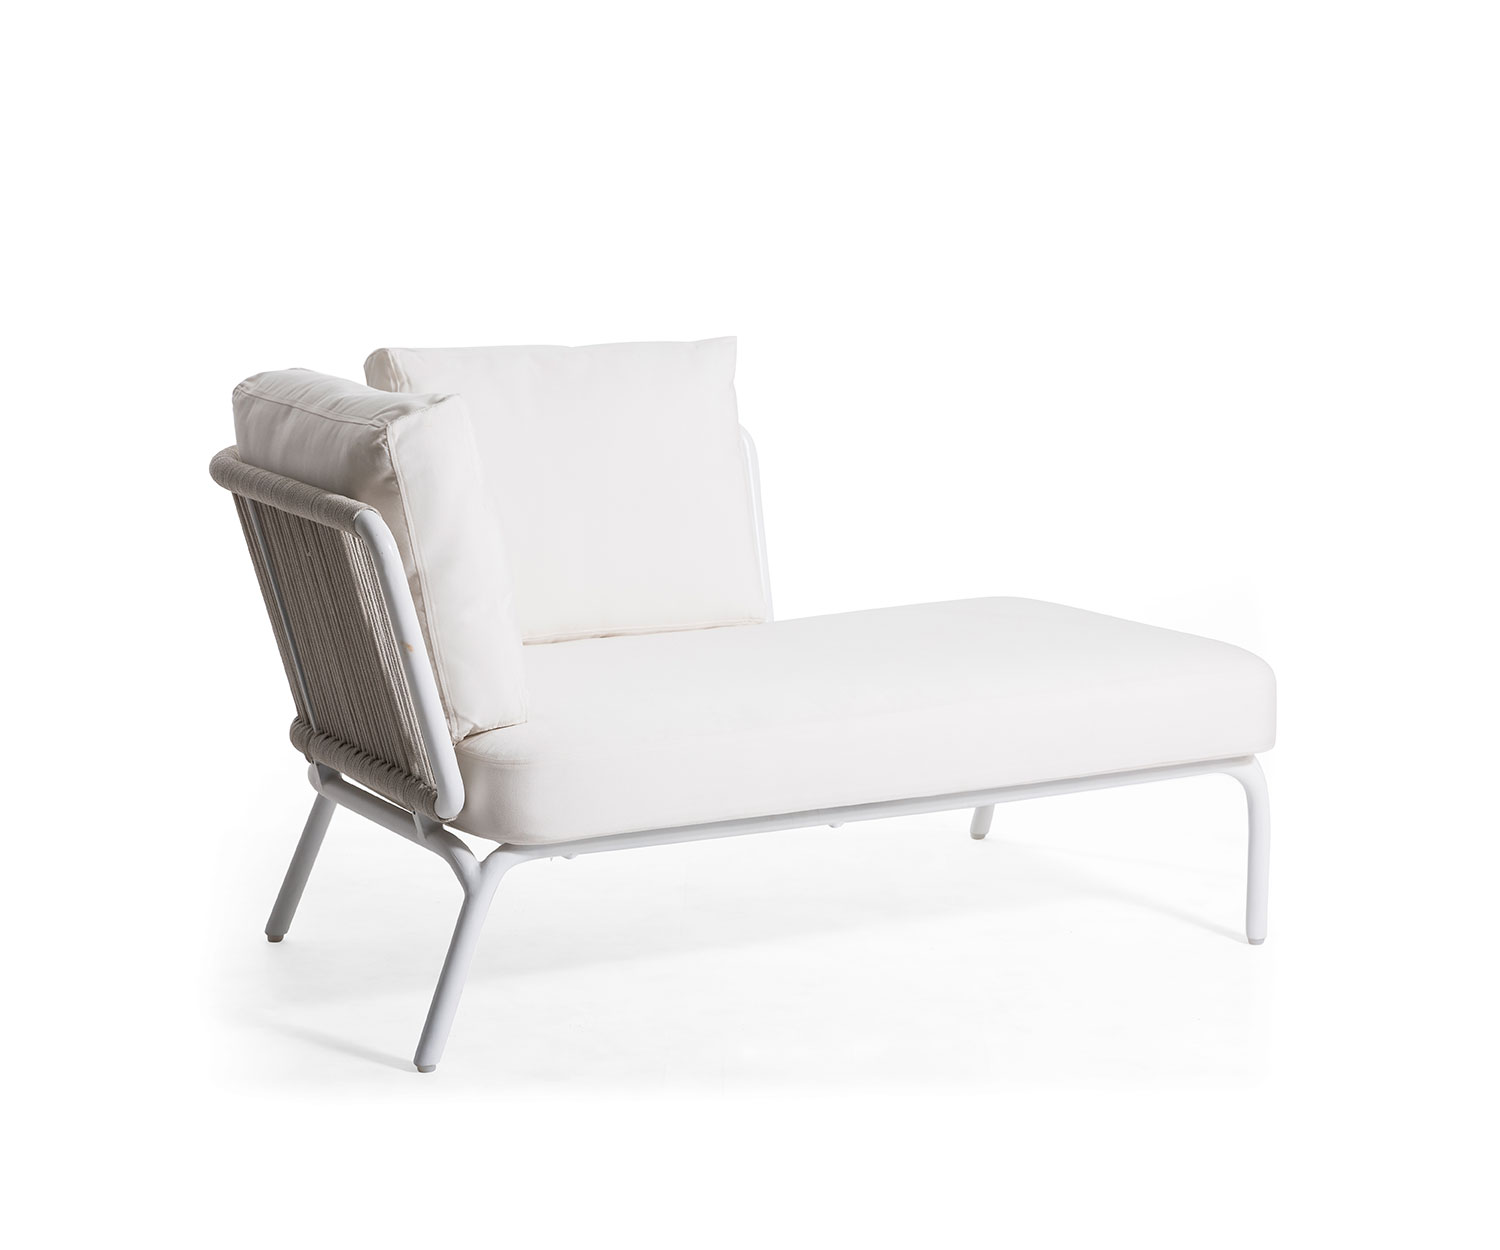 Oasiq Yland chaise longue 2-zits design bank